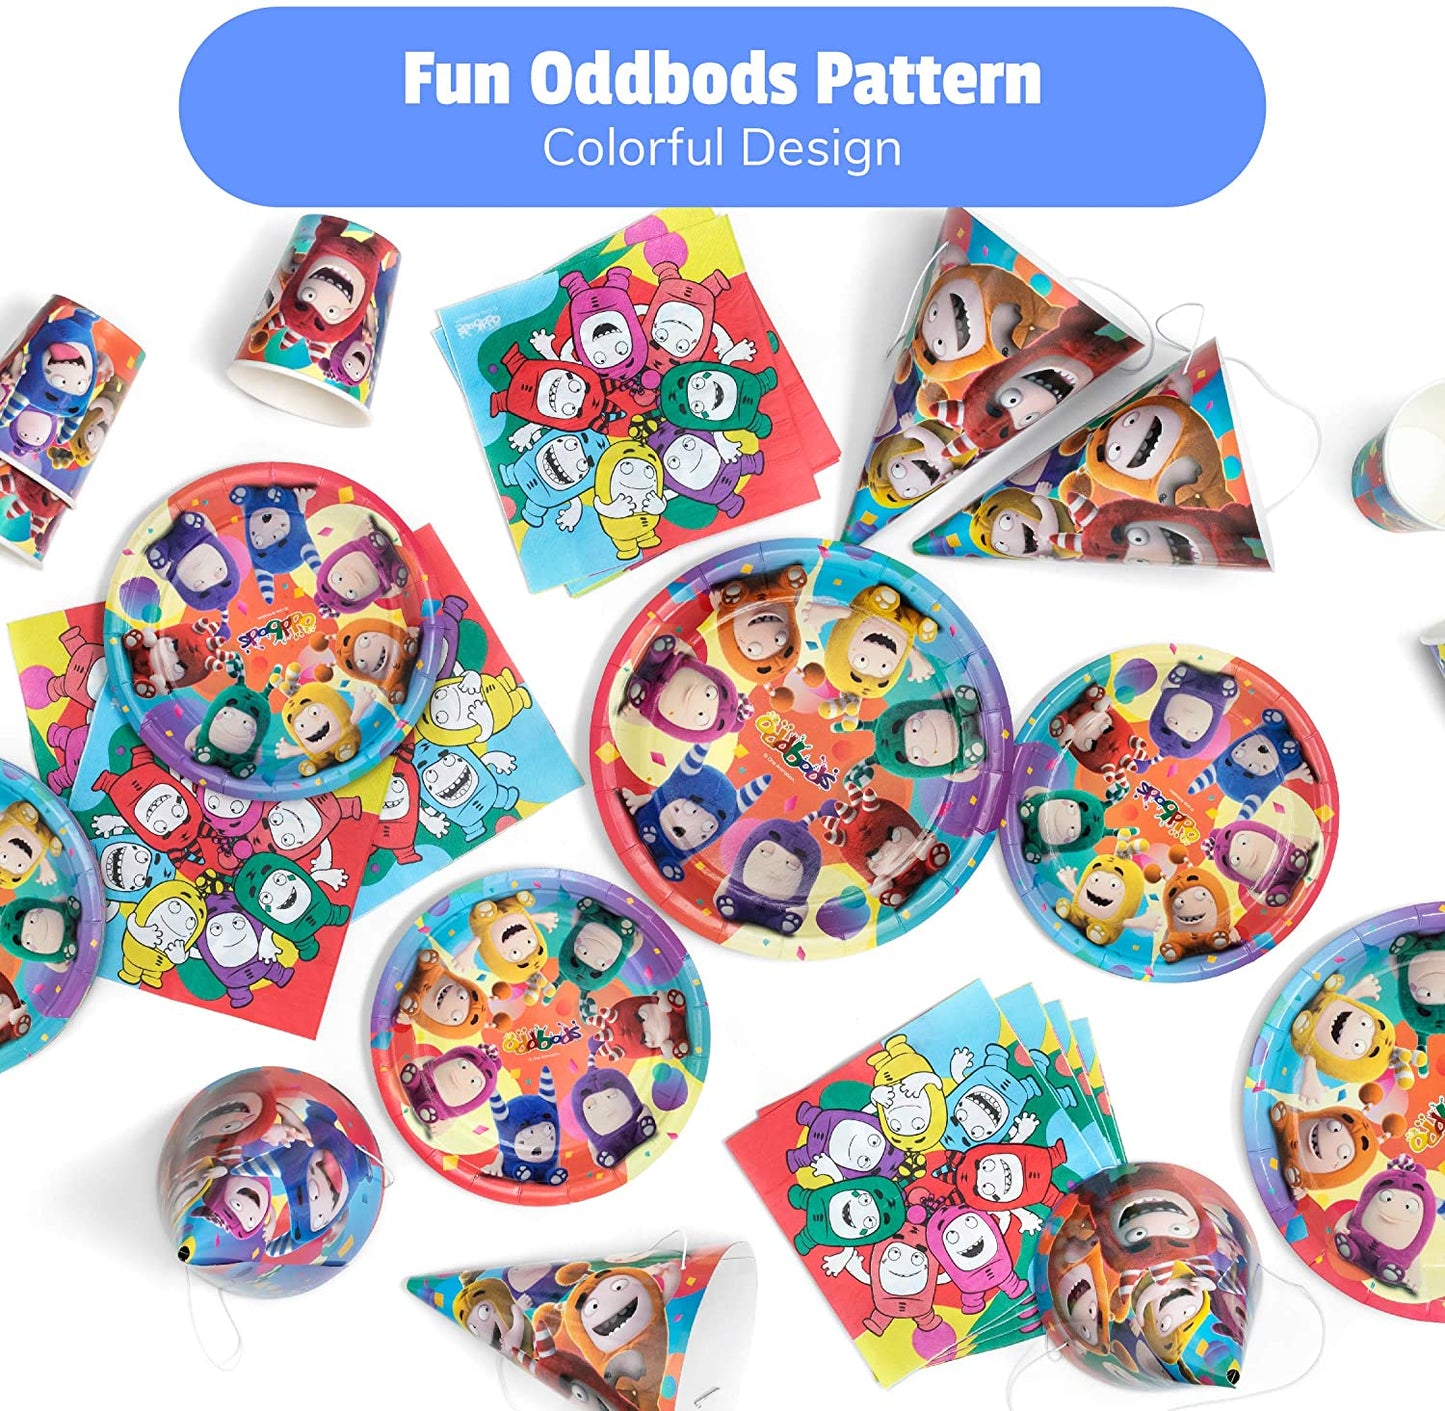 Oddbods - Artigos para festas de aniversário de crianças com tema Oddbods